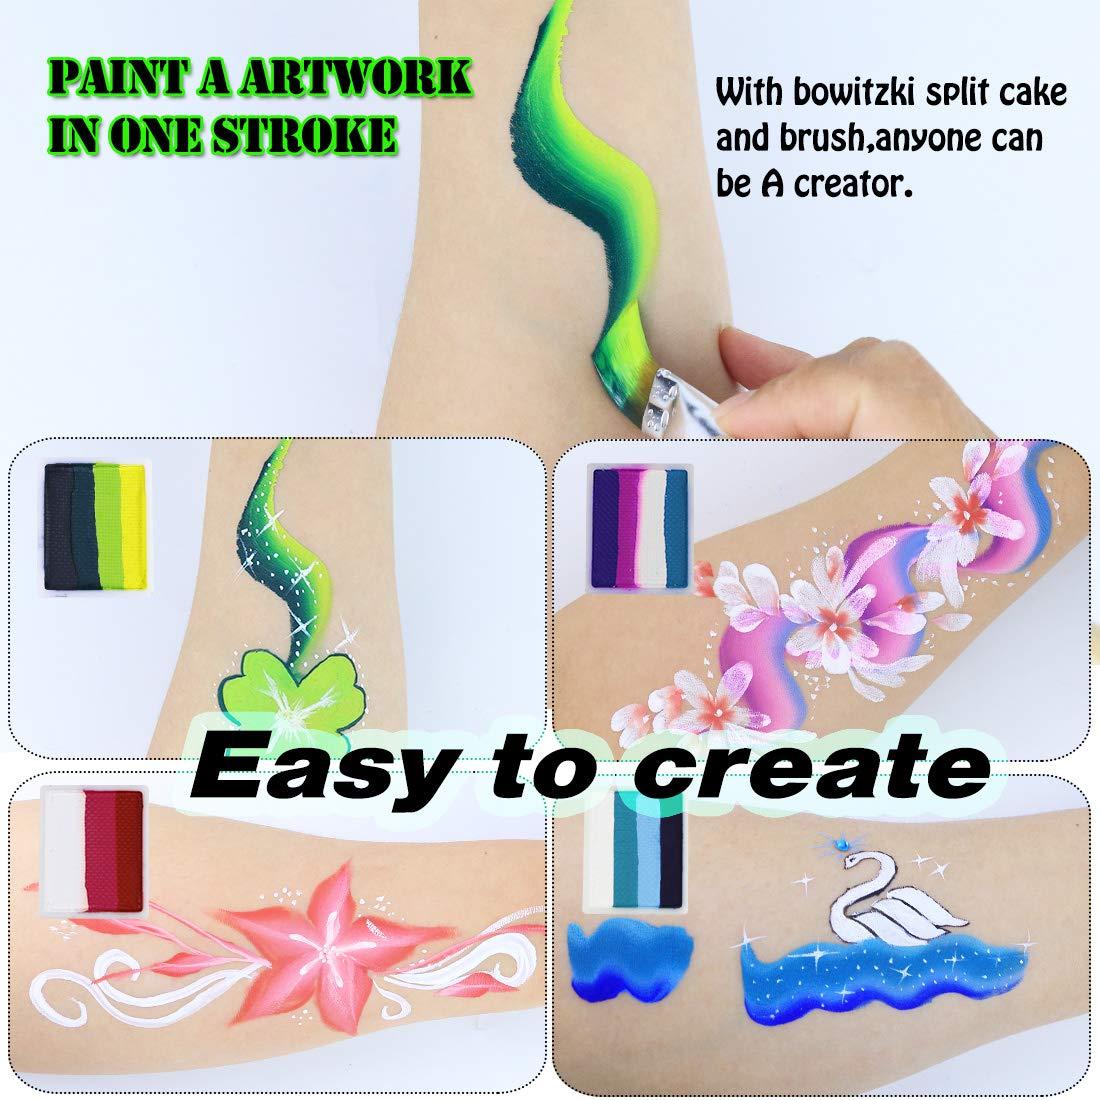 Bowitzki Professional Rainbow Face Paint Kit with Paint Sponges